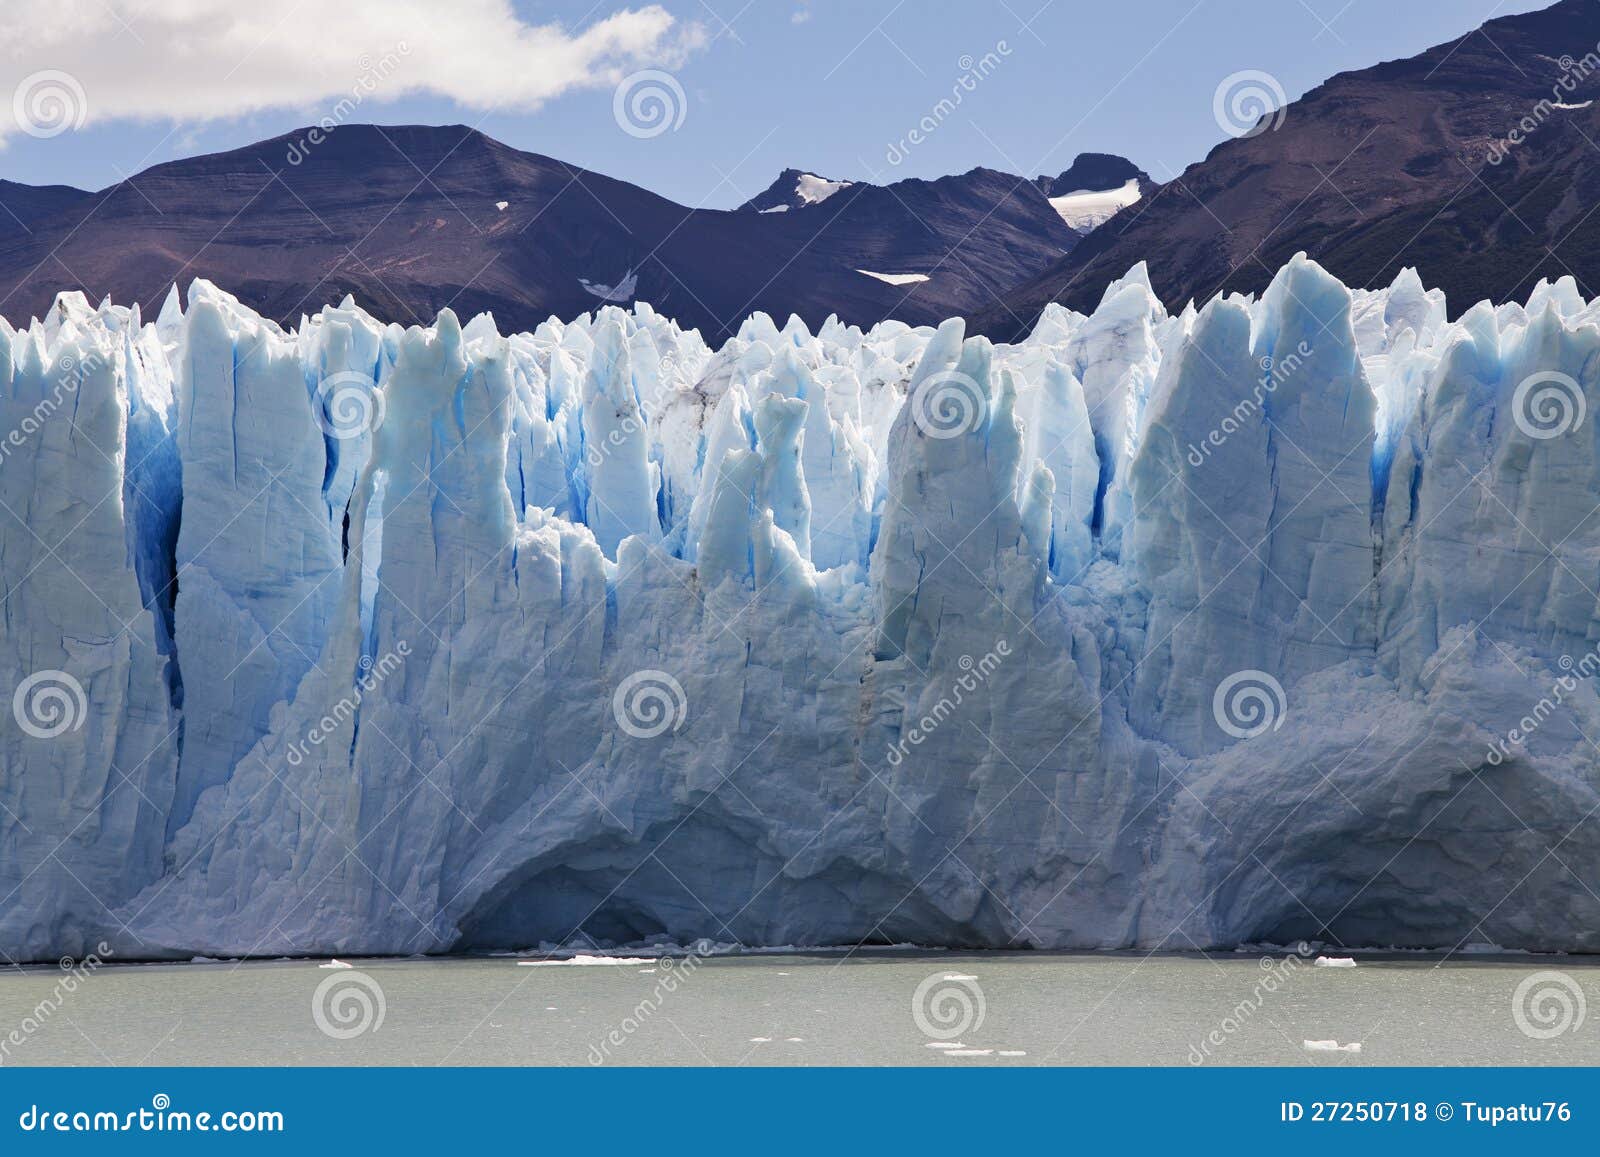 perito morenos glaciar close-up